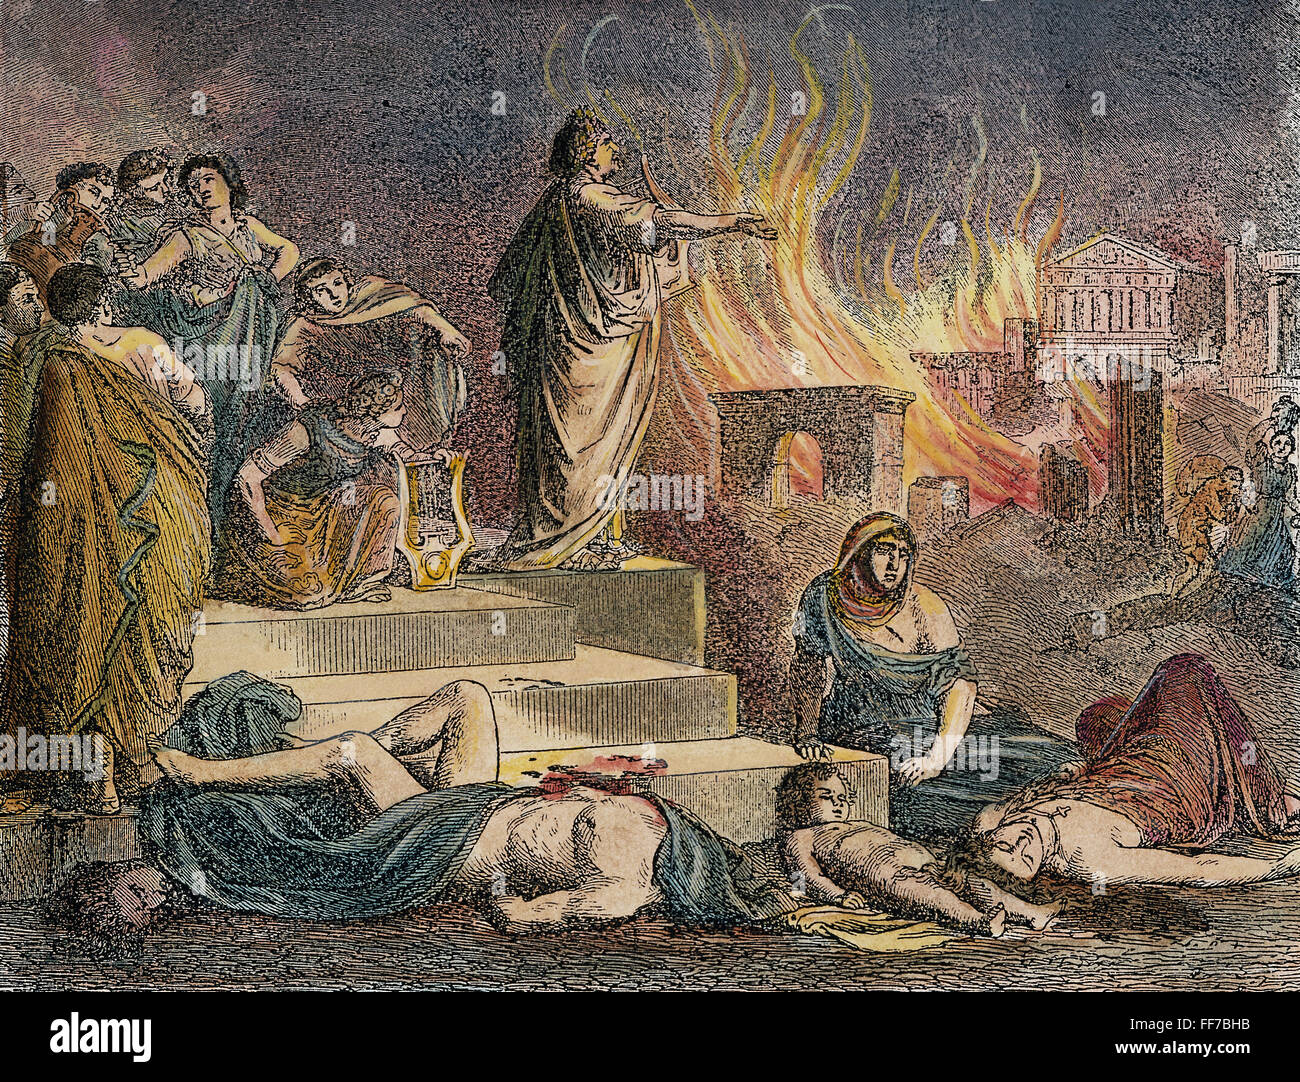 NERO spielen LYRE, 64 n. Chr. /nNero seine Leier zu spielen, bei der Verbrennung von Rom in 64 n. Chr. Kupferstich, 18. Jahrhundert. Stockfoto